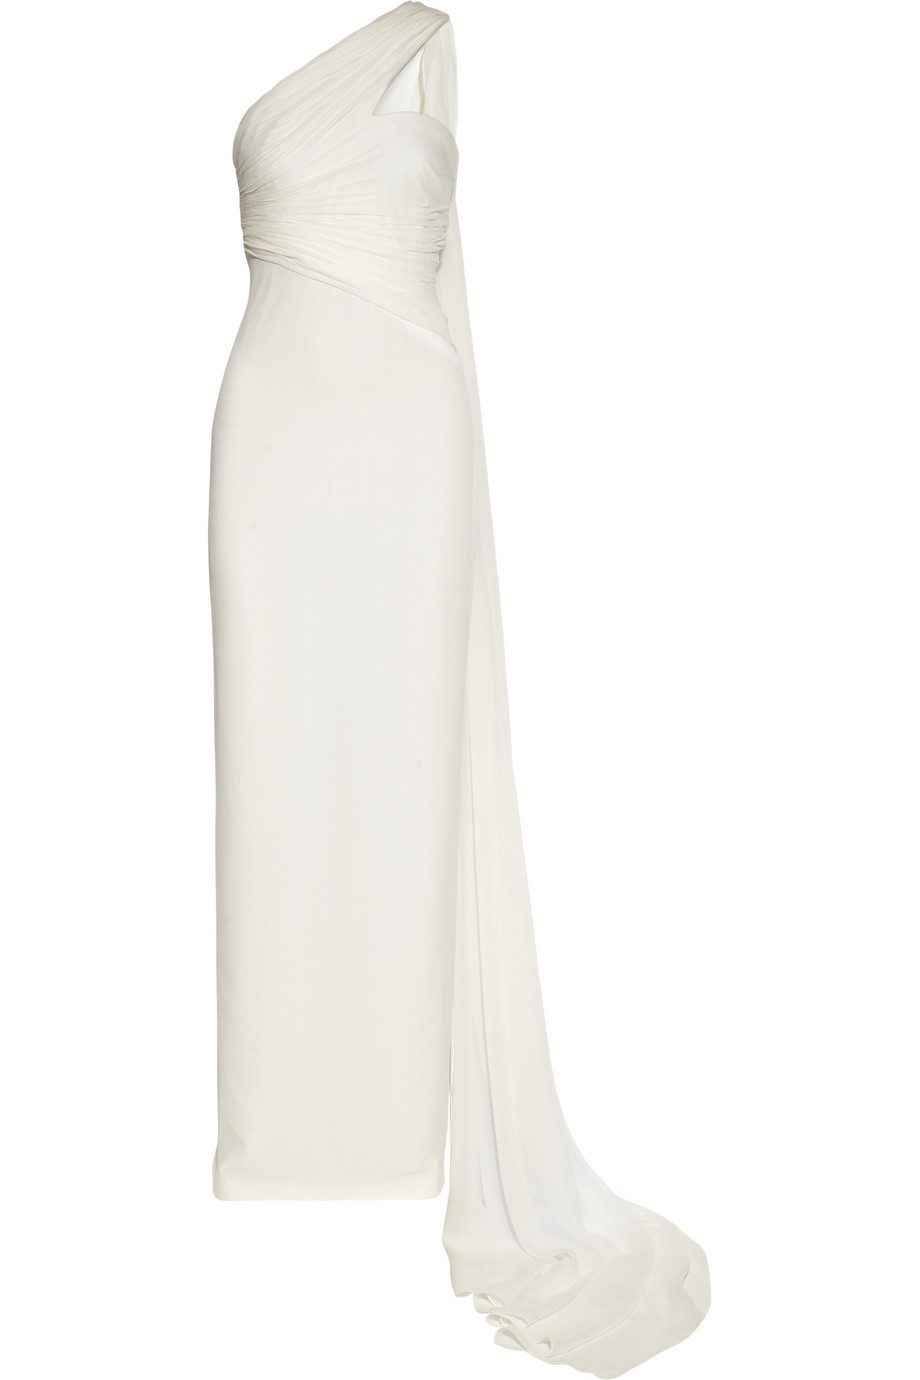 Lyst - Notte By Marchesa Oneshoulder Textured Silkchiffon Gown in White